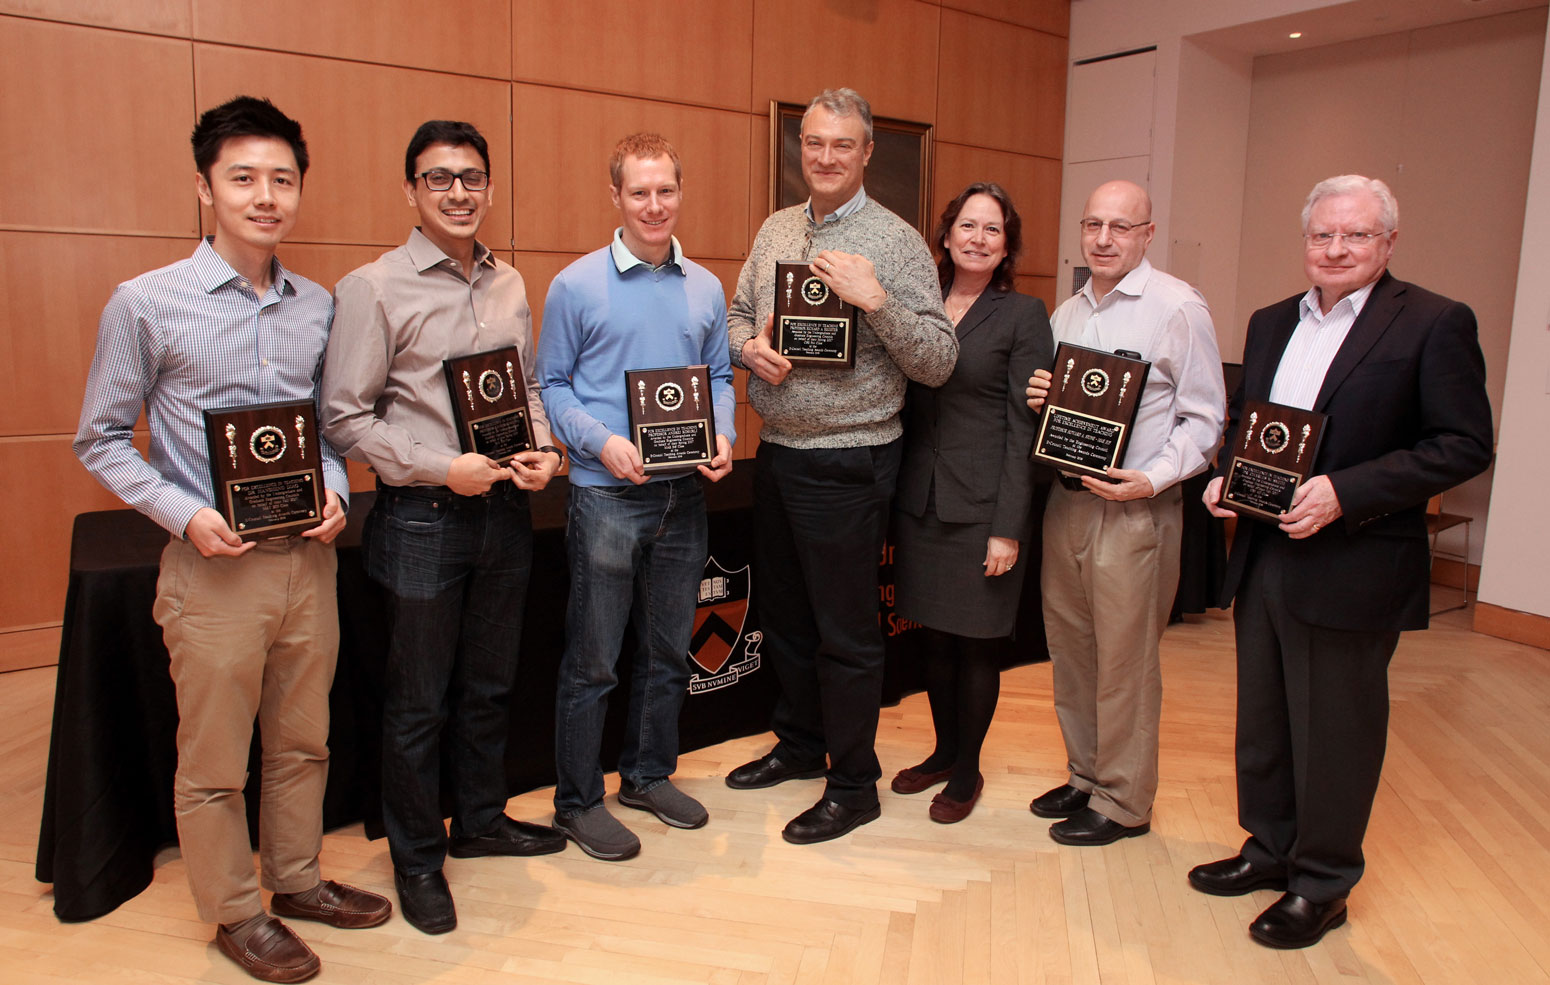 Faculty Award Recipients